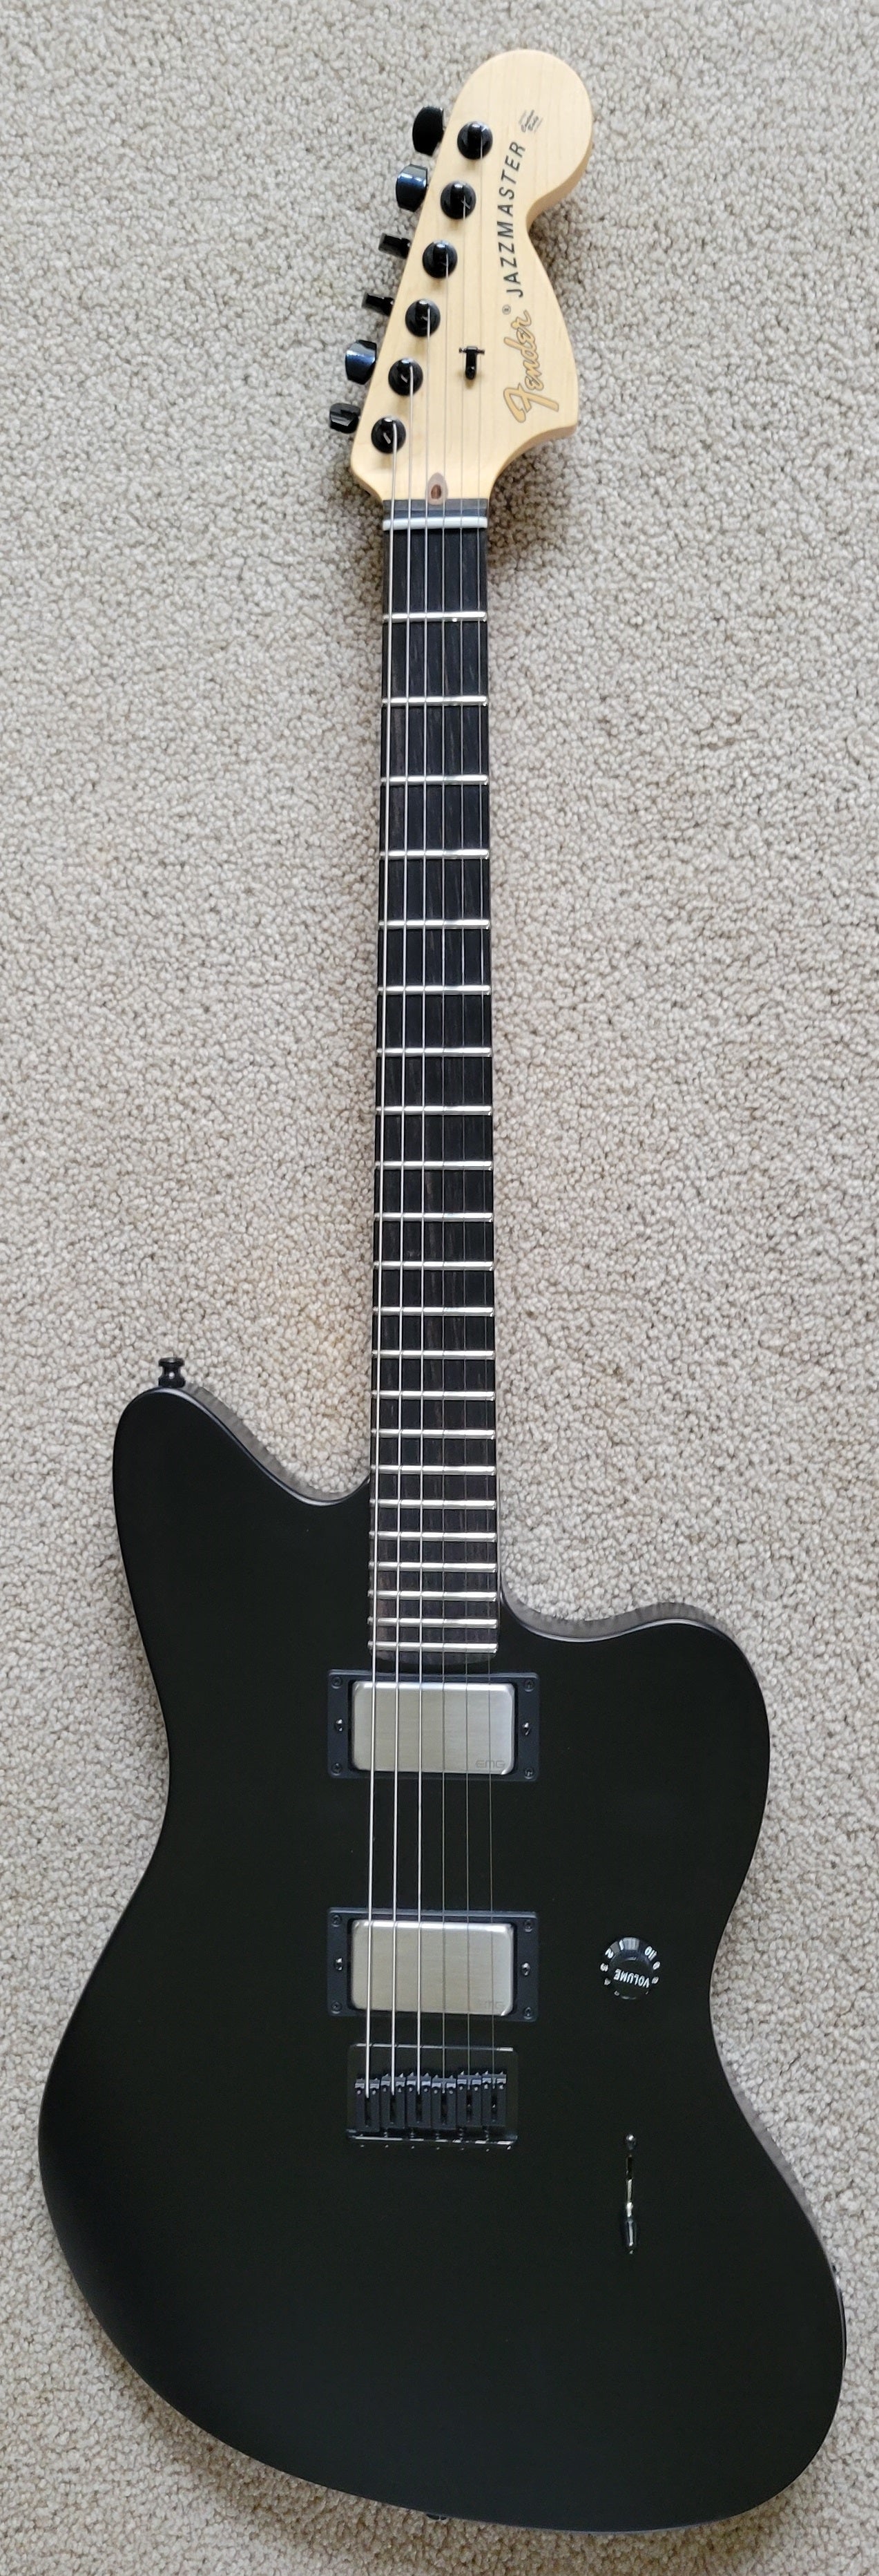 Fender Jim Root Jazzmaster Electric Guitar, Deluxe Black Tweed Hardshell  Case